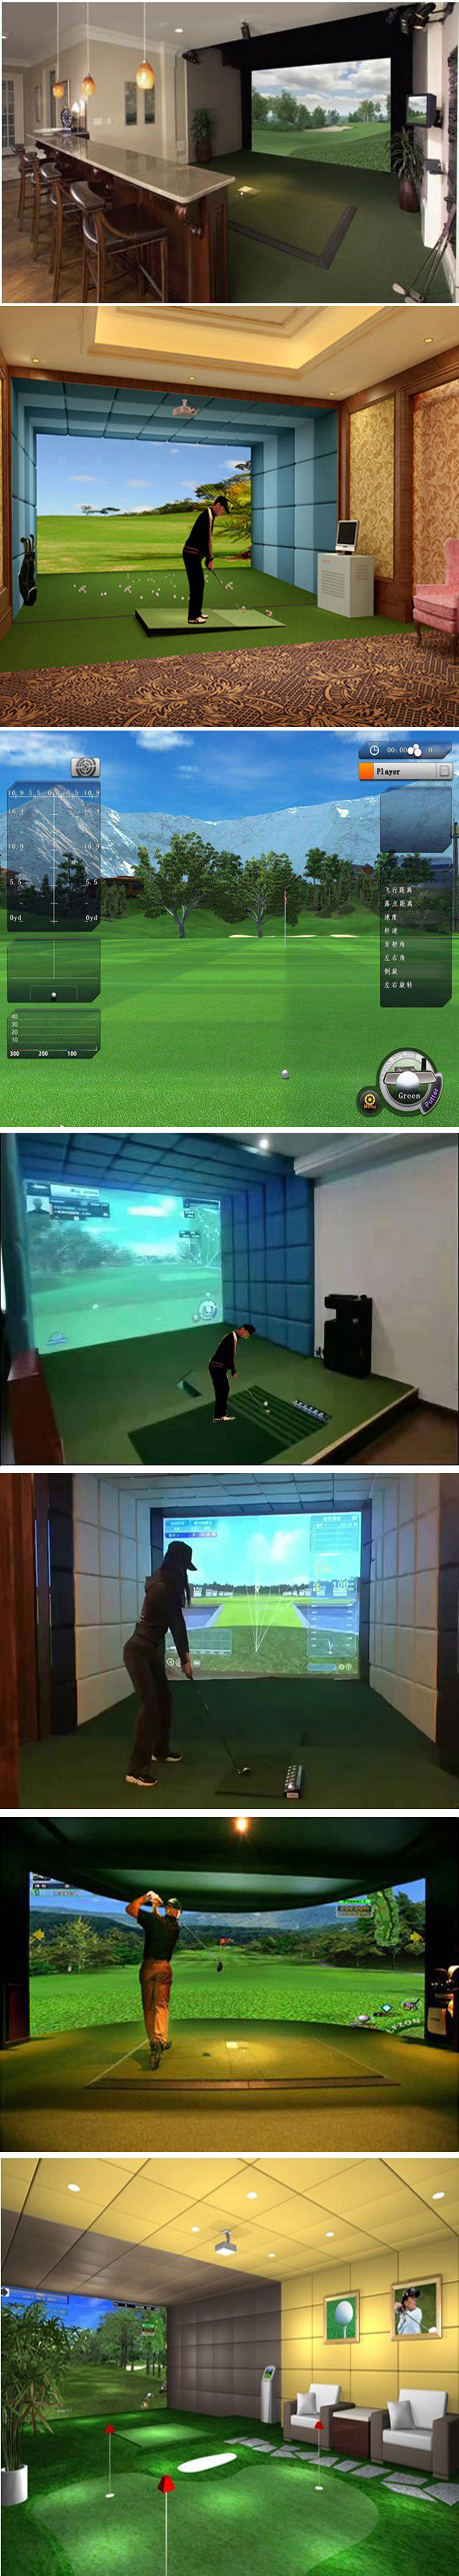 室内高尔夫模拟训练系统 03.jpg